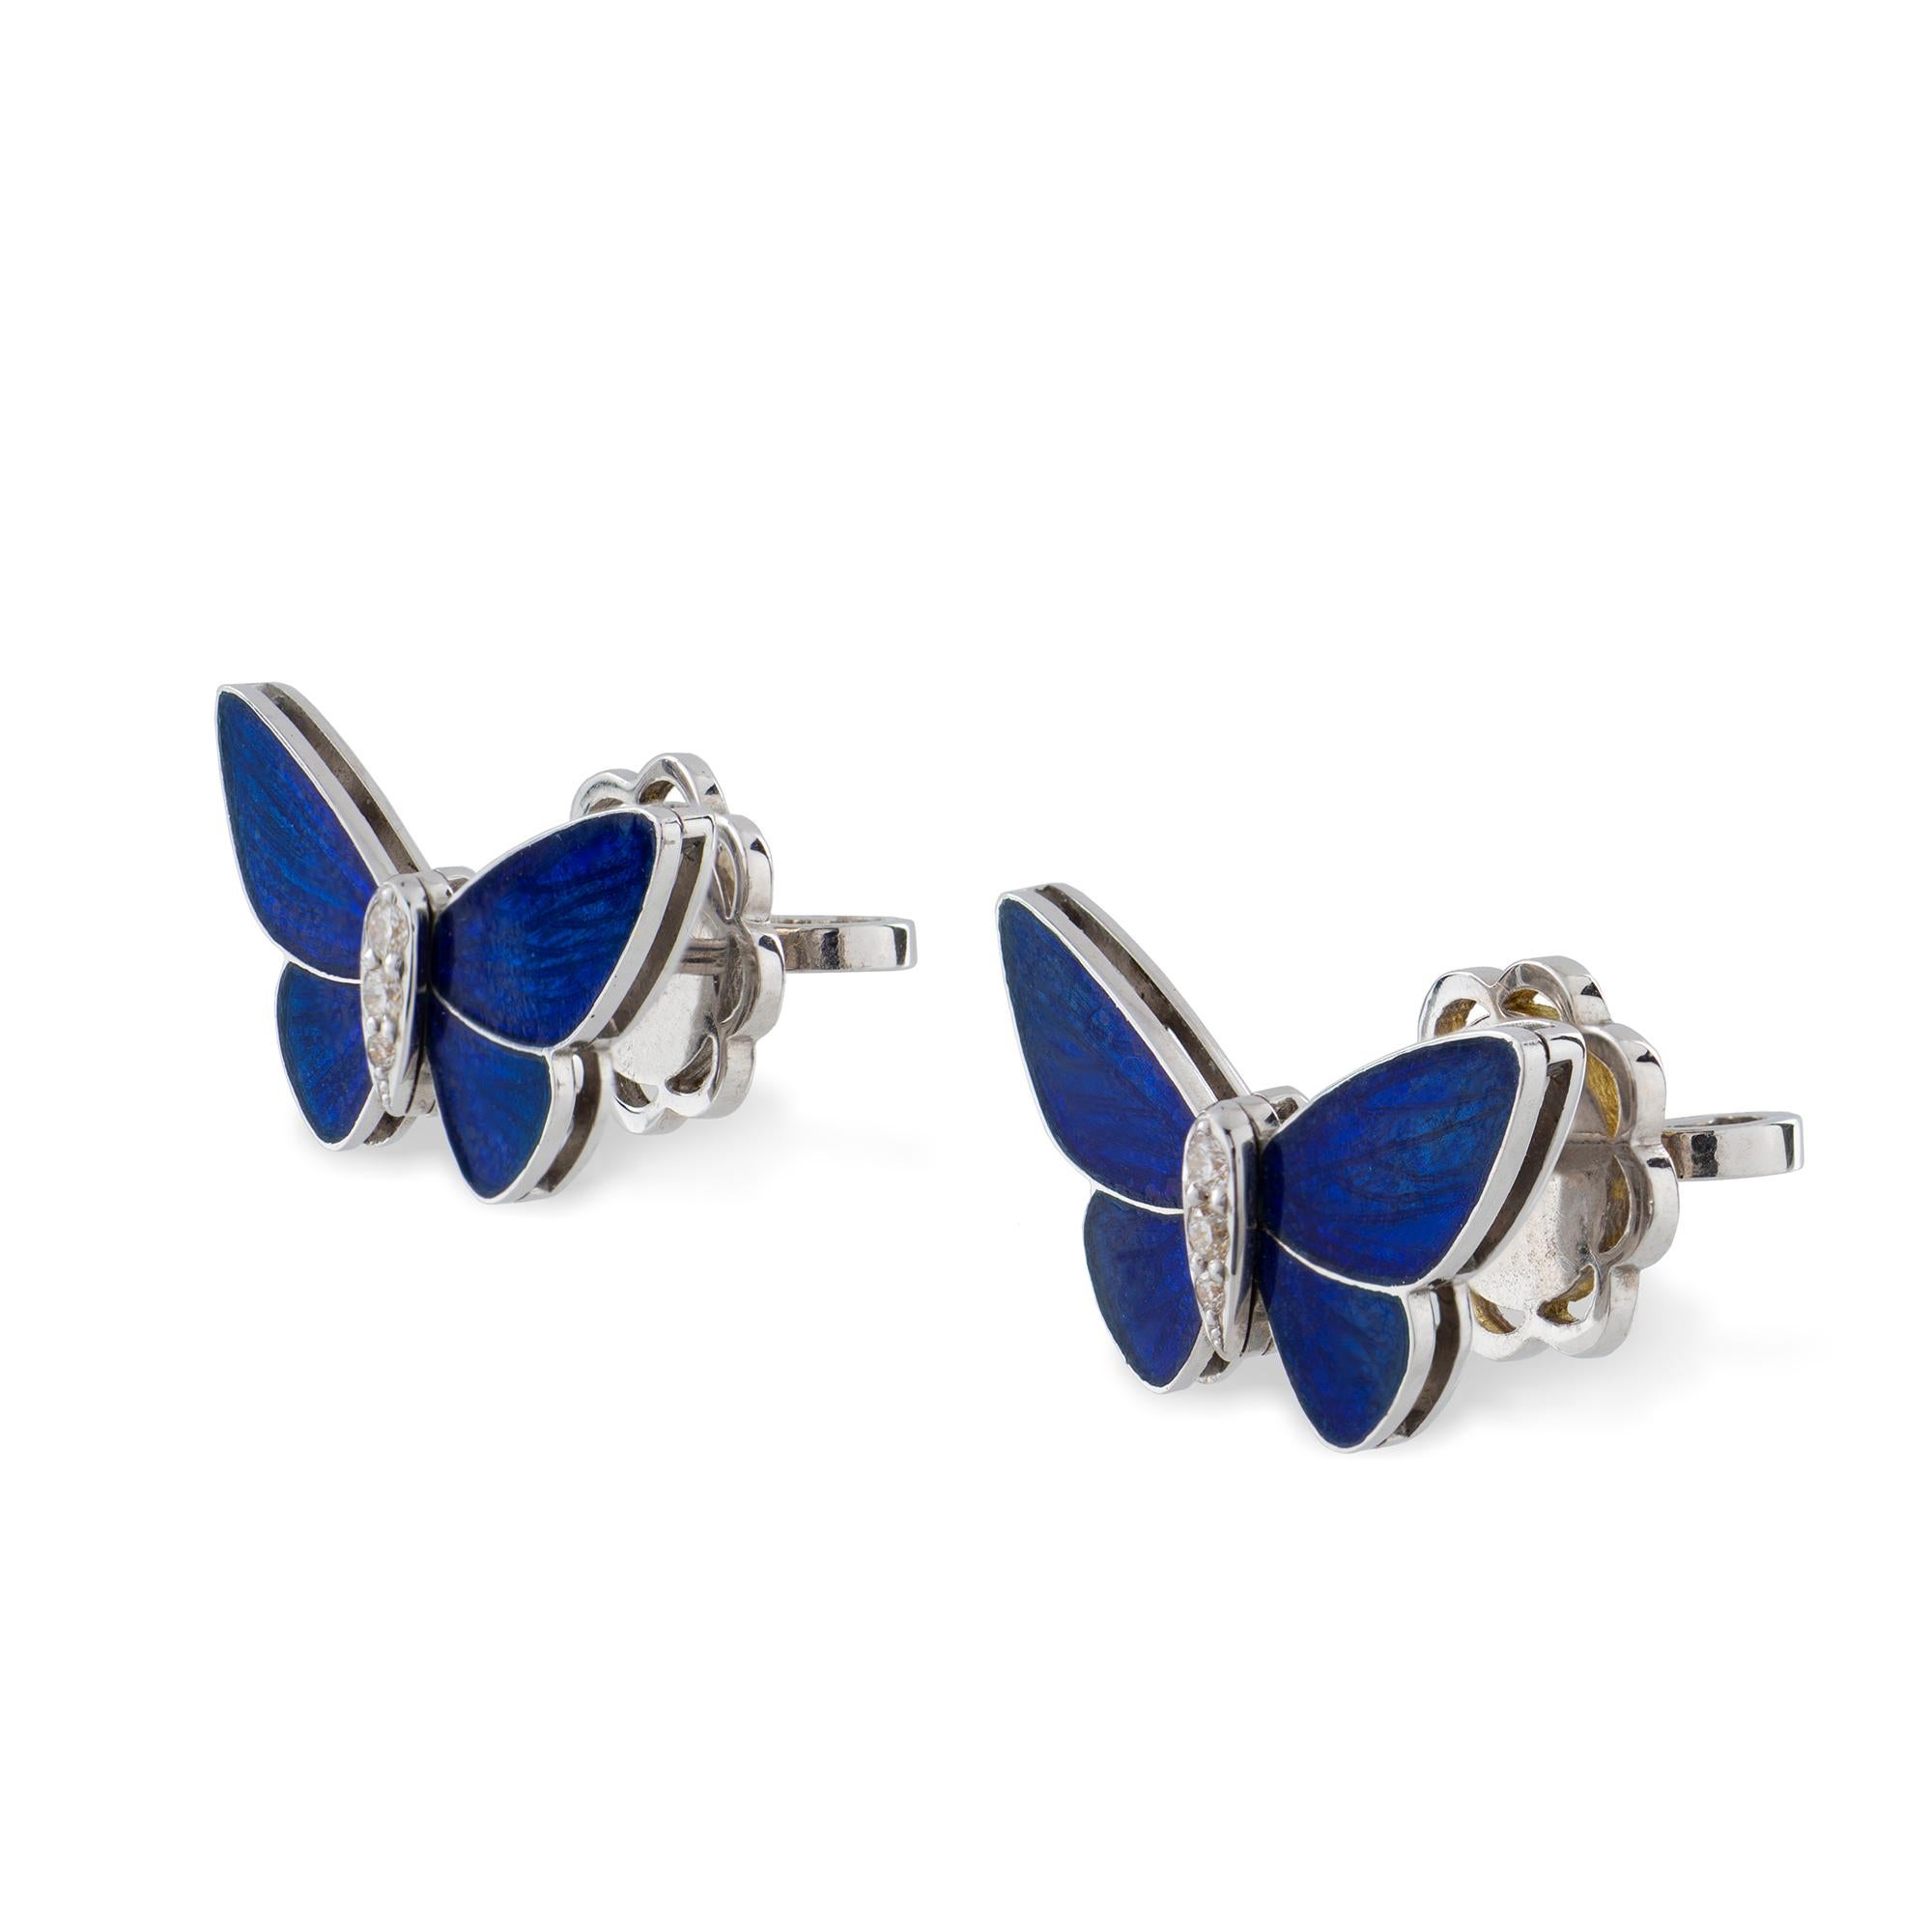 Ein Paar nachtblaue Schmetterlingsohrstecker von Ilgiz F., jeder Schmetterling mit champlevé-blau emaillierten Flügeln und diamantbesetzten Körpern, montiert in Weißgold mit Stift- und Schneckenbeschlägen, von Ilgiz Fazulzyanov, gestempelt auf 18